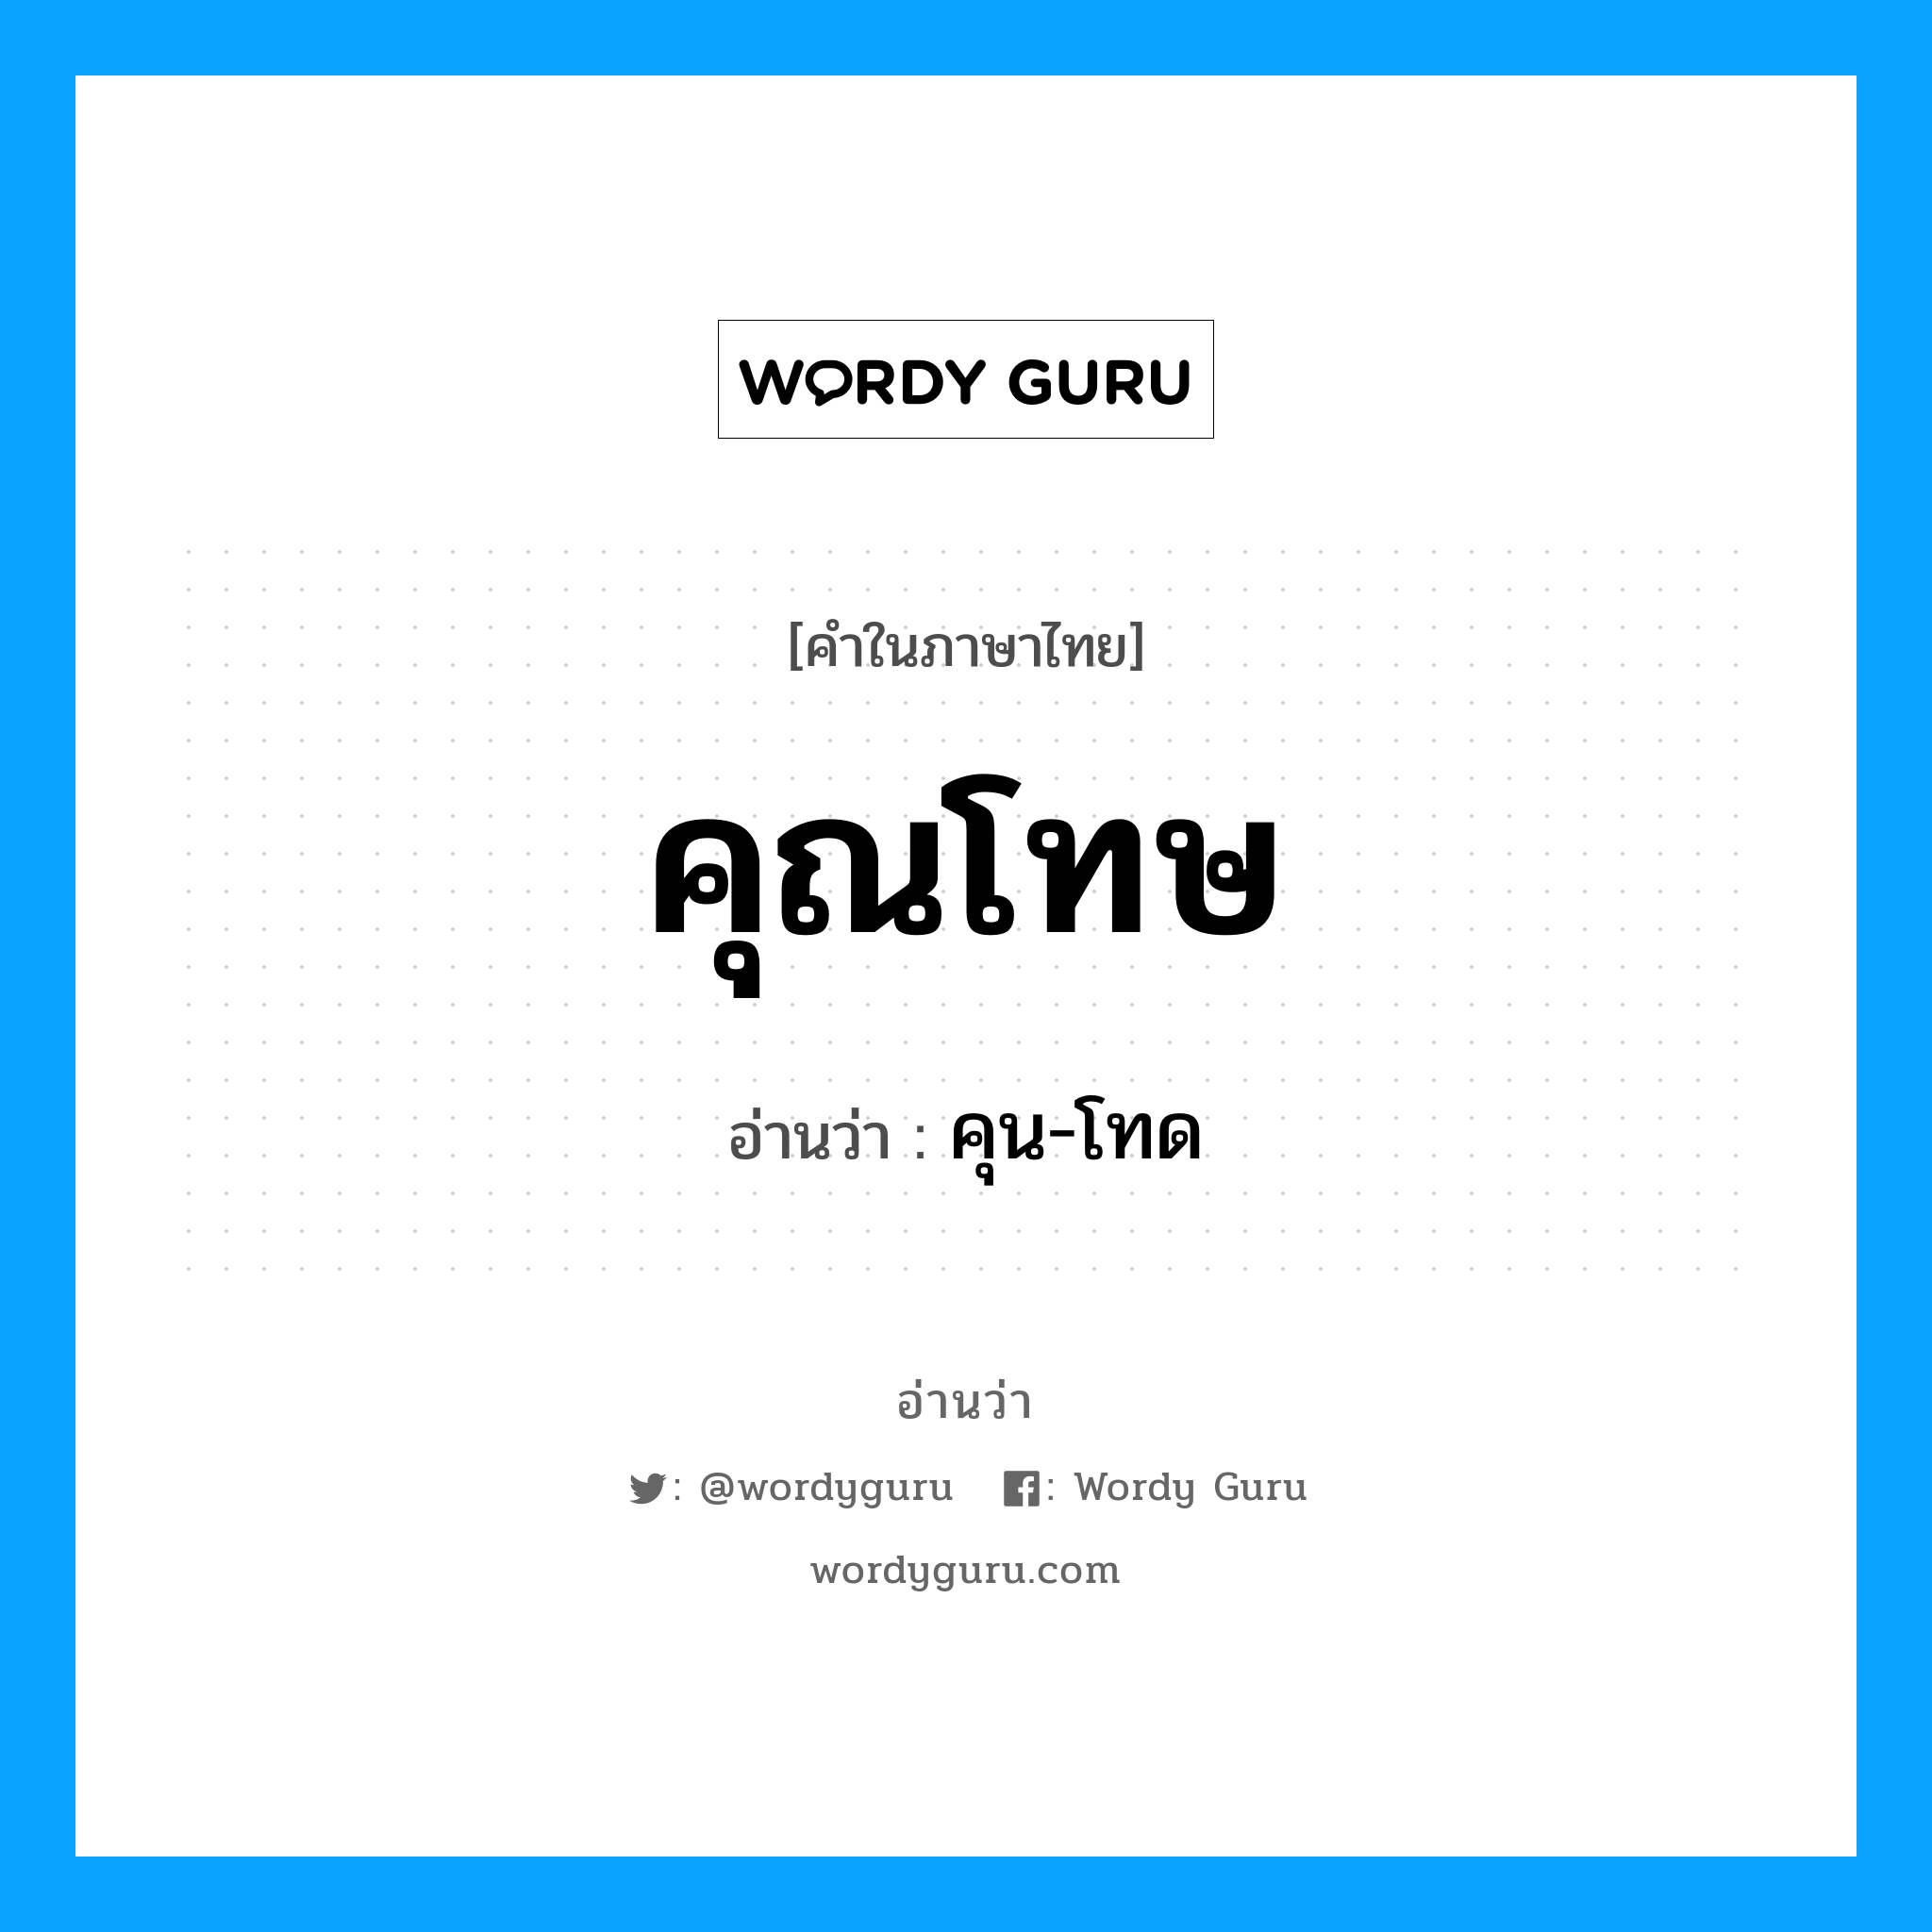 คุน-โทด เป็นคำอ่านของคำไหน?, คำในภาษาไทย คุน-โทด อ่านว่า คุณโทษ